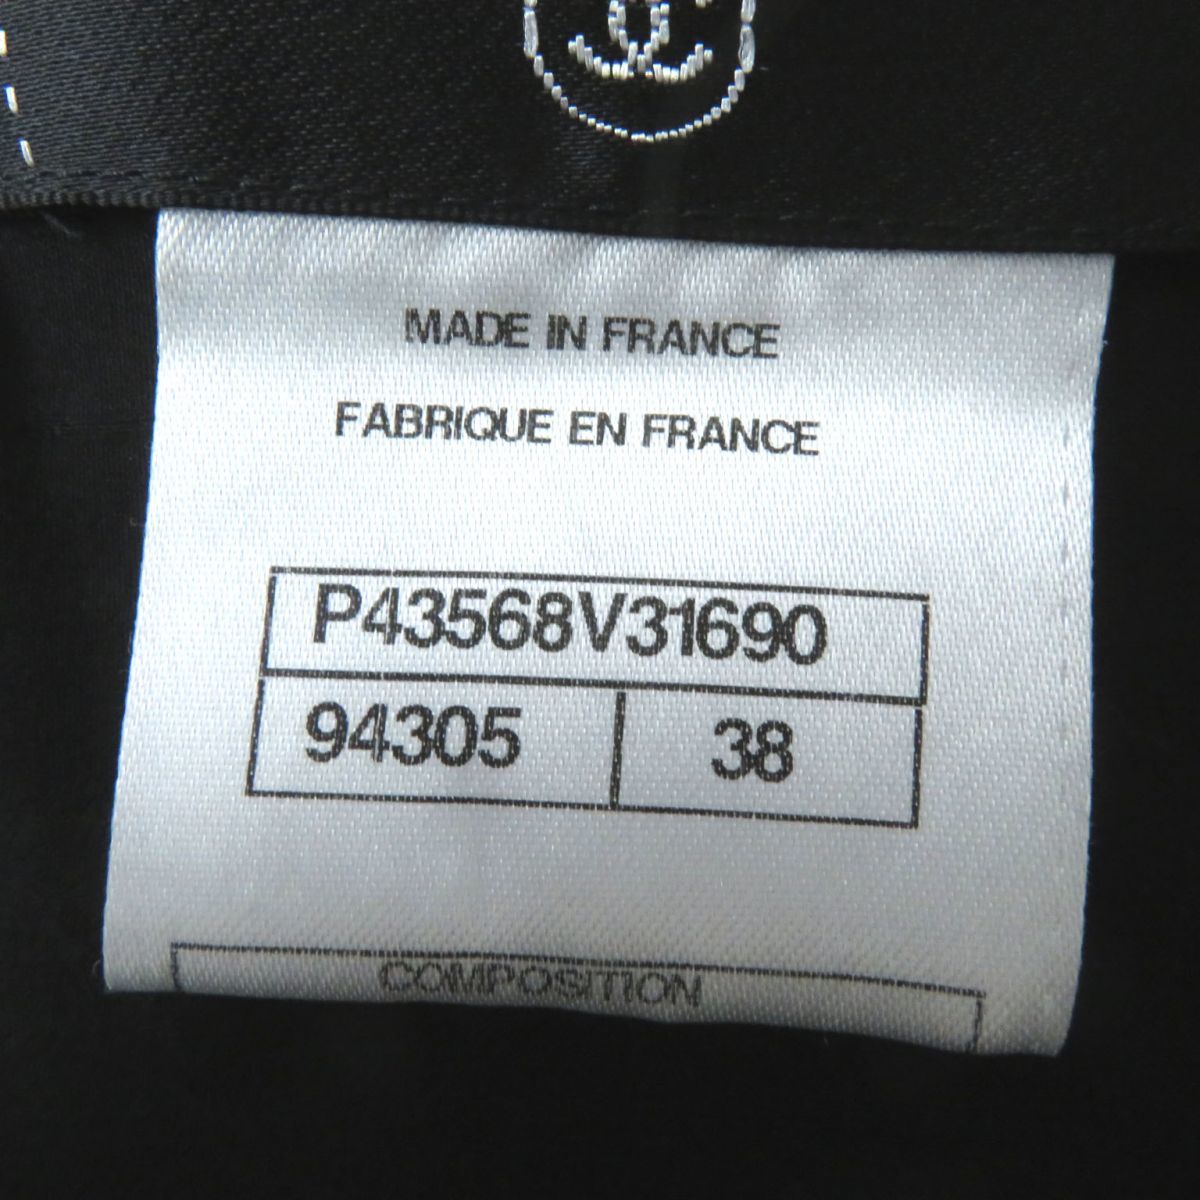  превосходный товар * Франция производства CHANEL Chanel 12S P43568 женский трубчатая обводка используя короткий рукав твид One-piece cut off дизайн черный 38